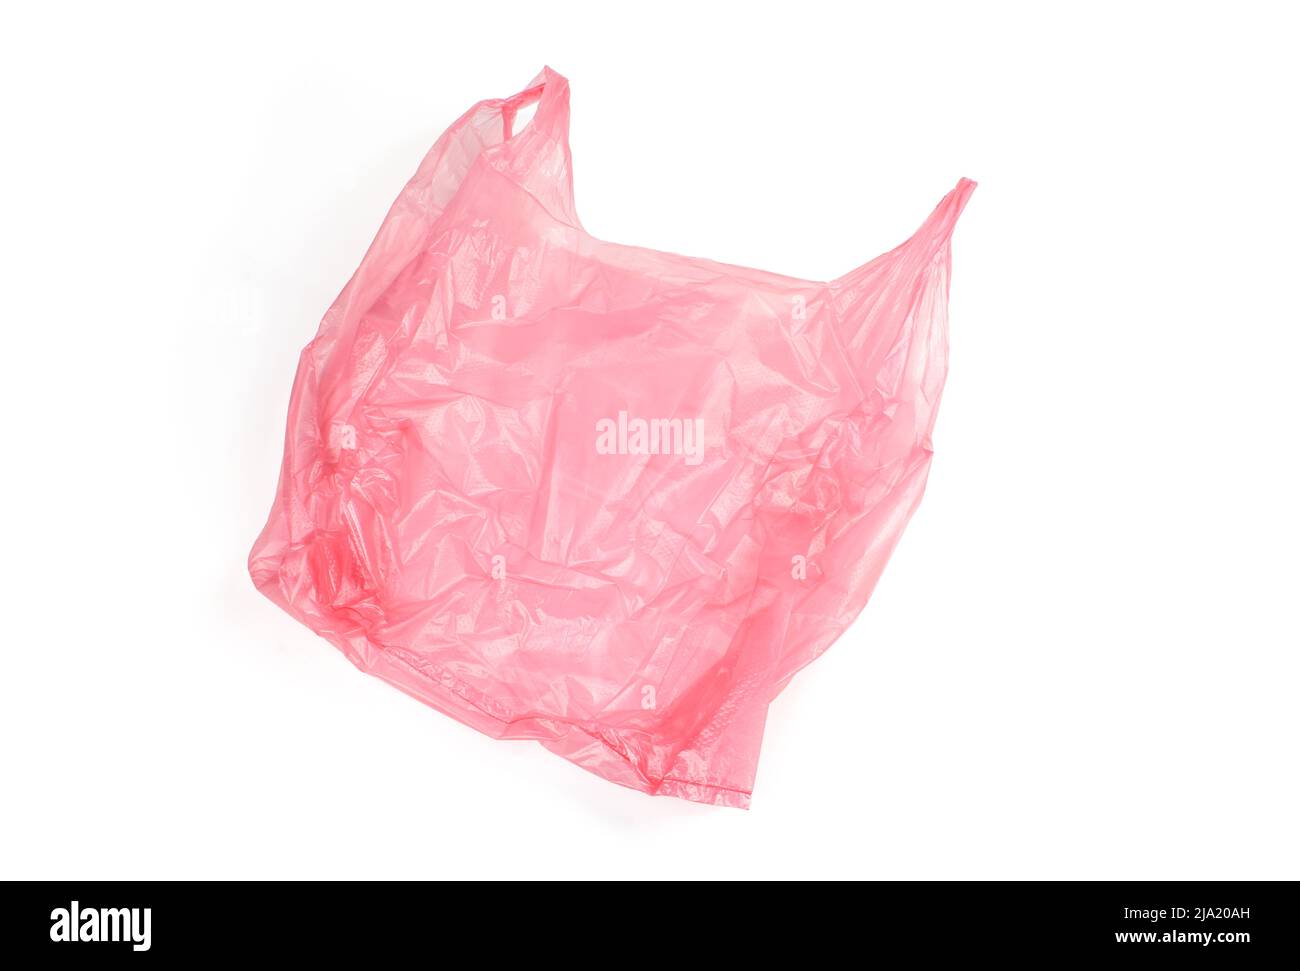 Premium Vector  Vector cramped transparent plastic bag, isolated